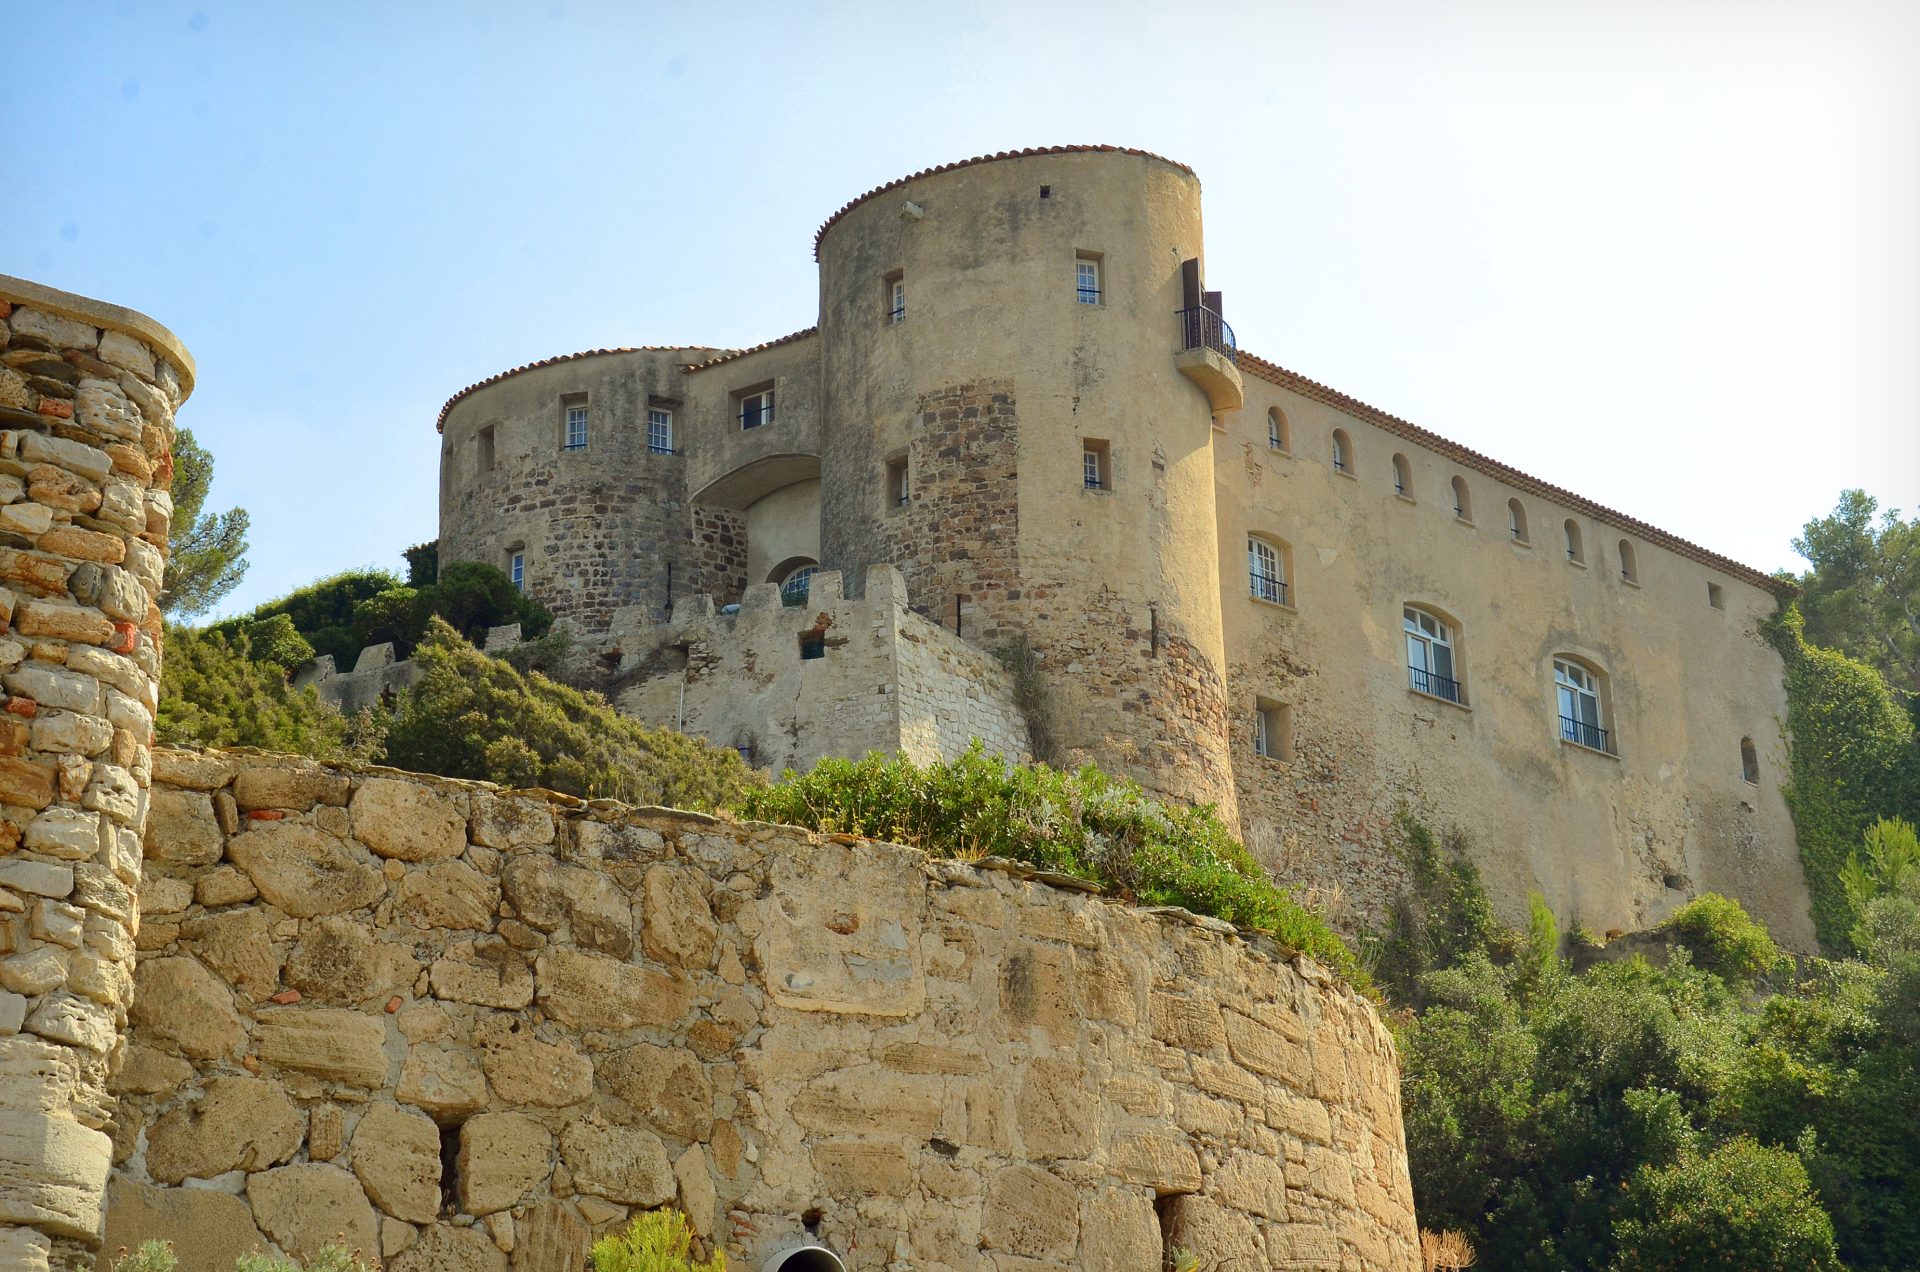 Le Fort de Brégançon